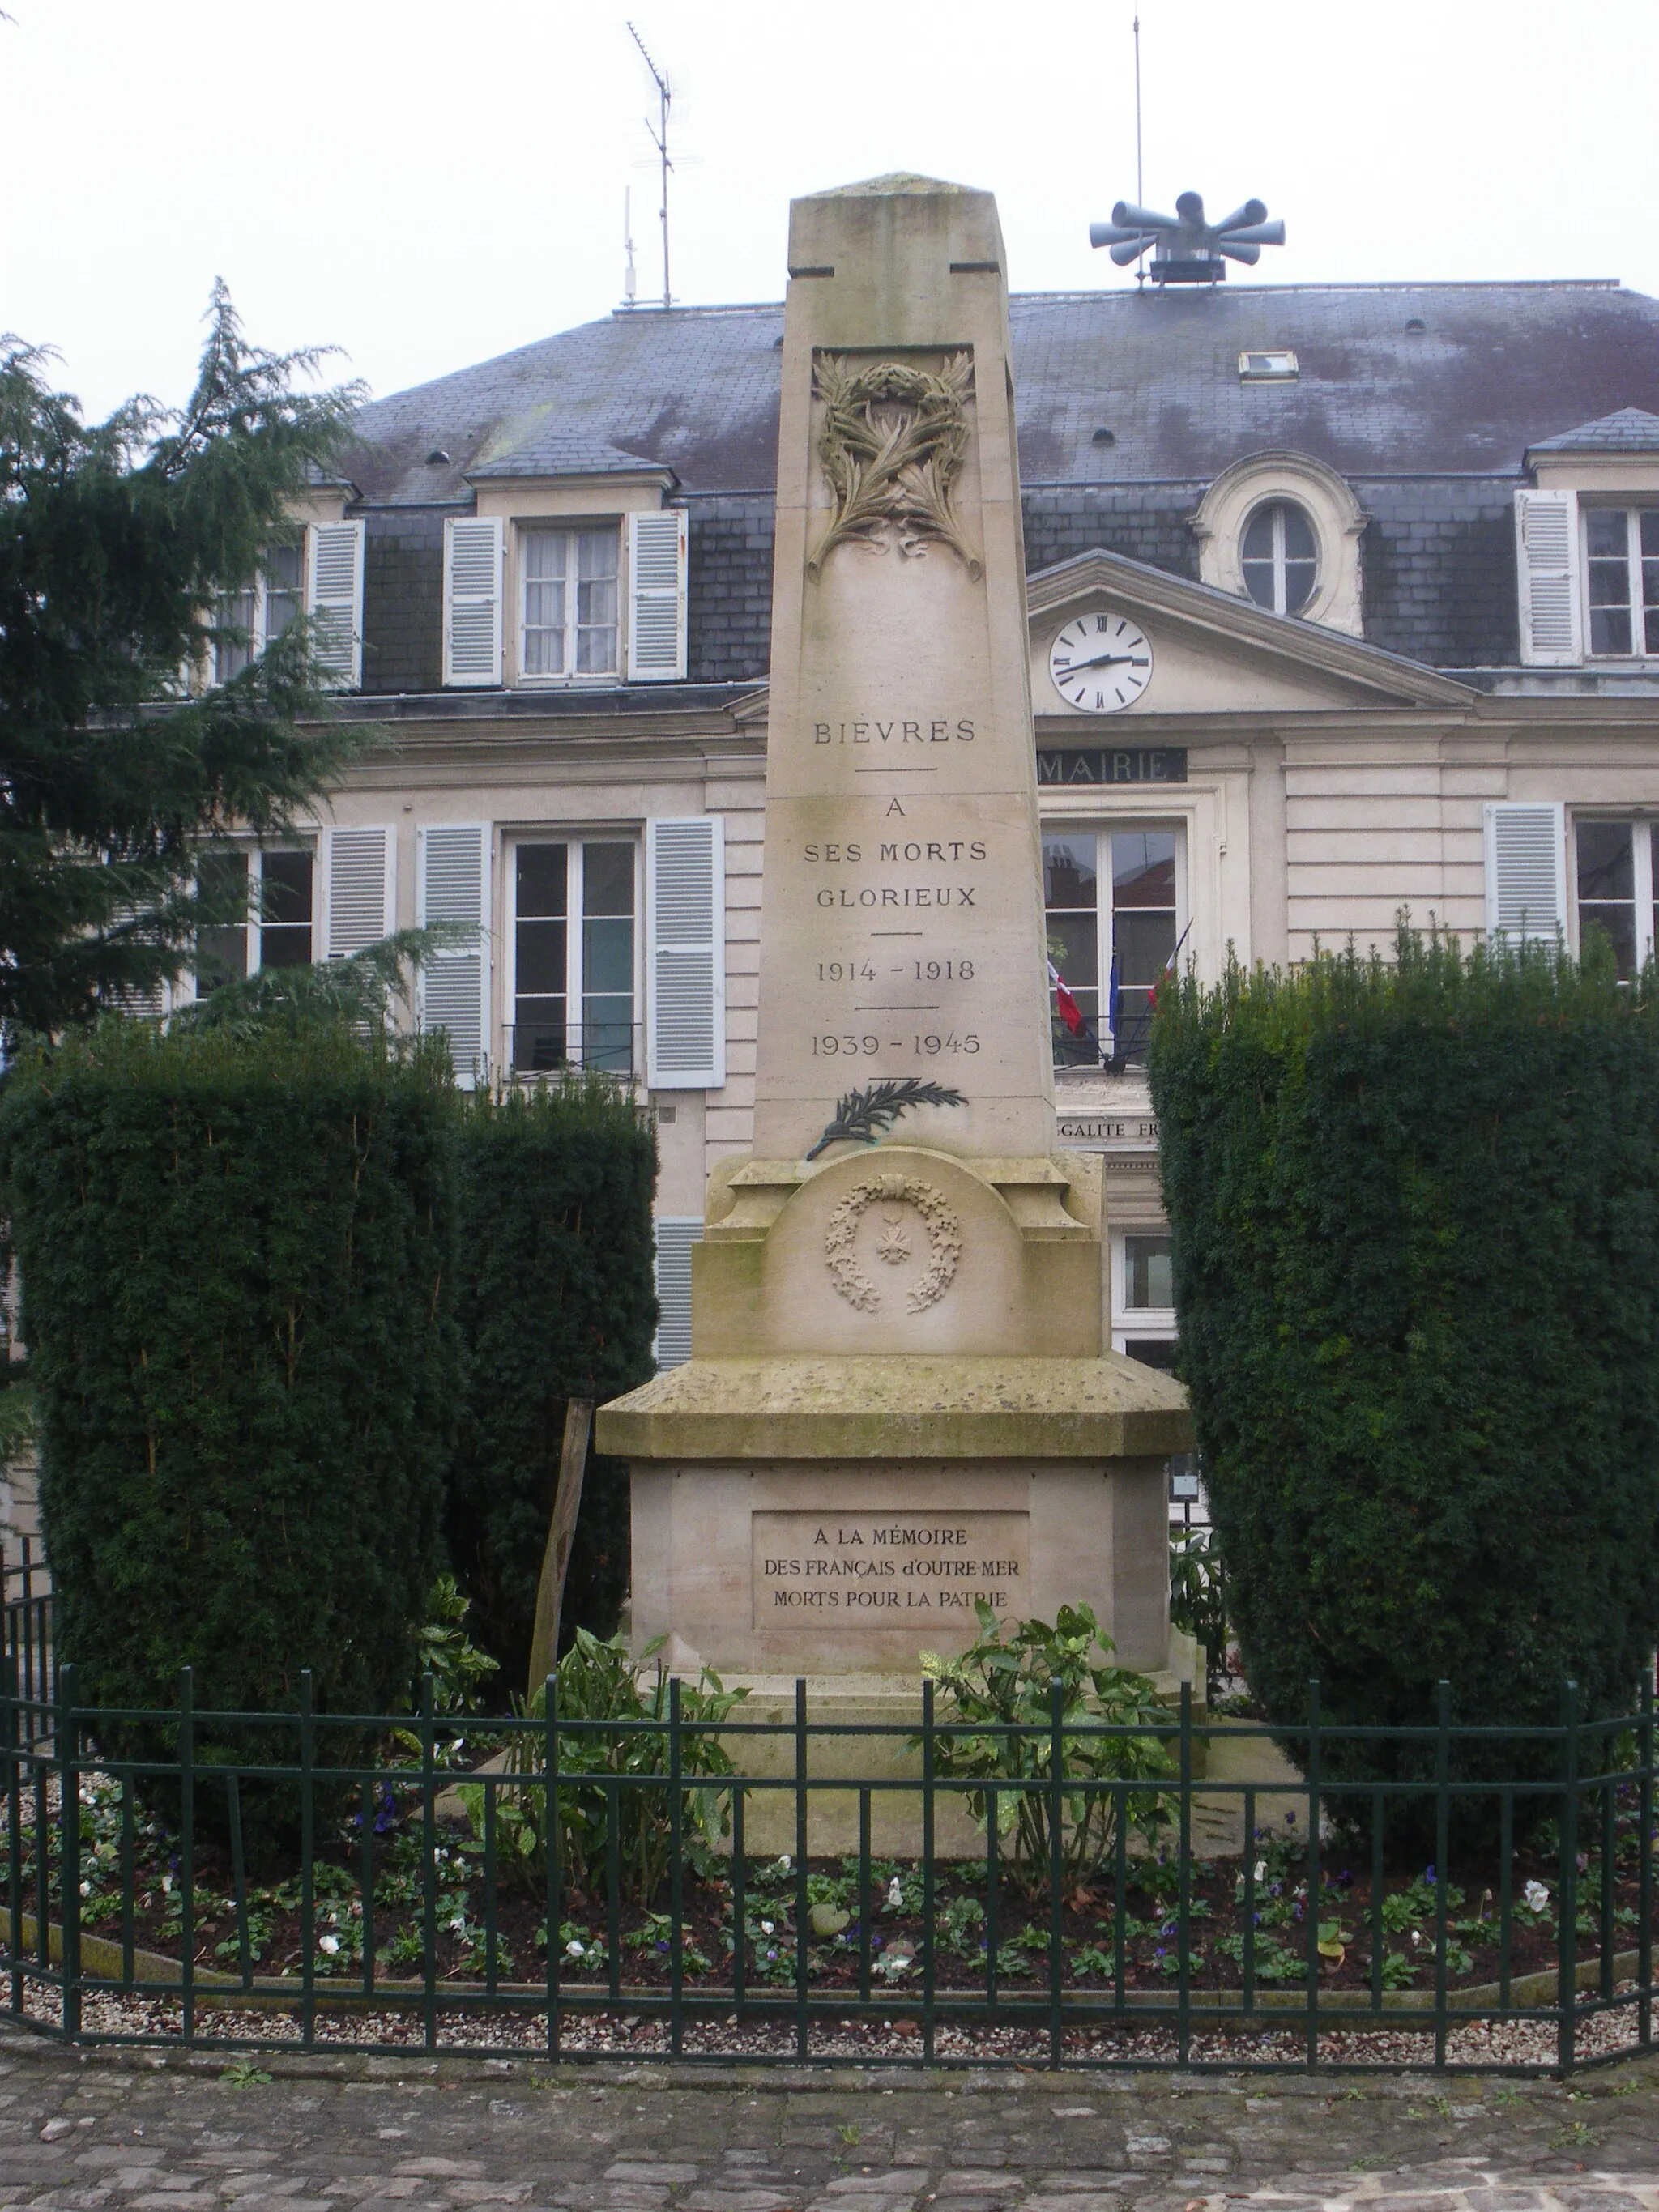 Photo showing: Soldiers memorial, Bièvres, Essonnes, France